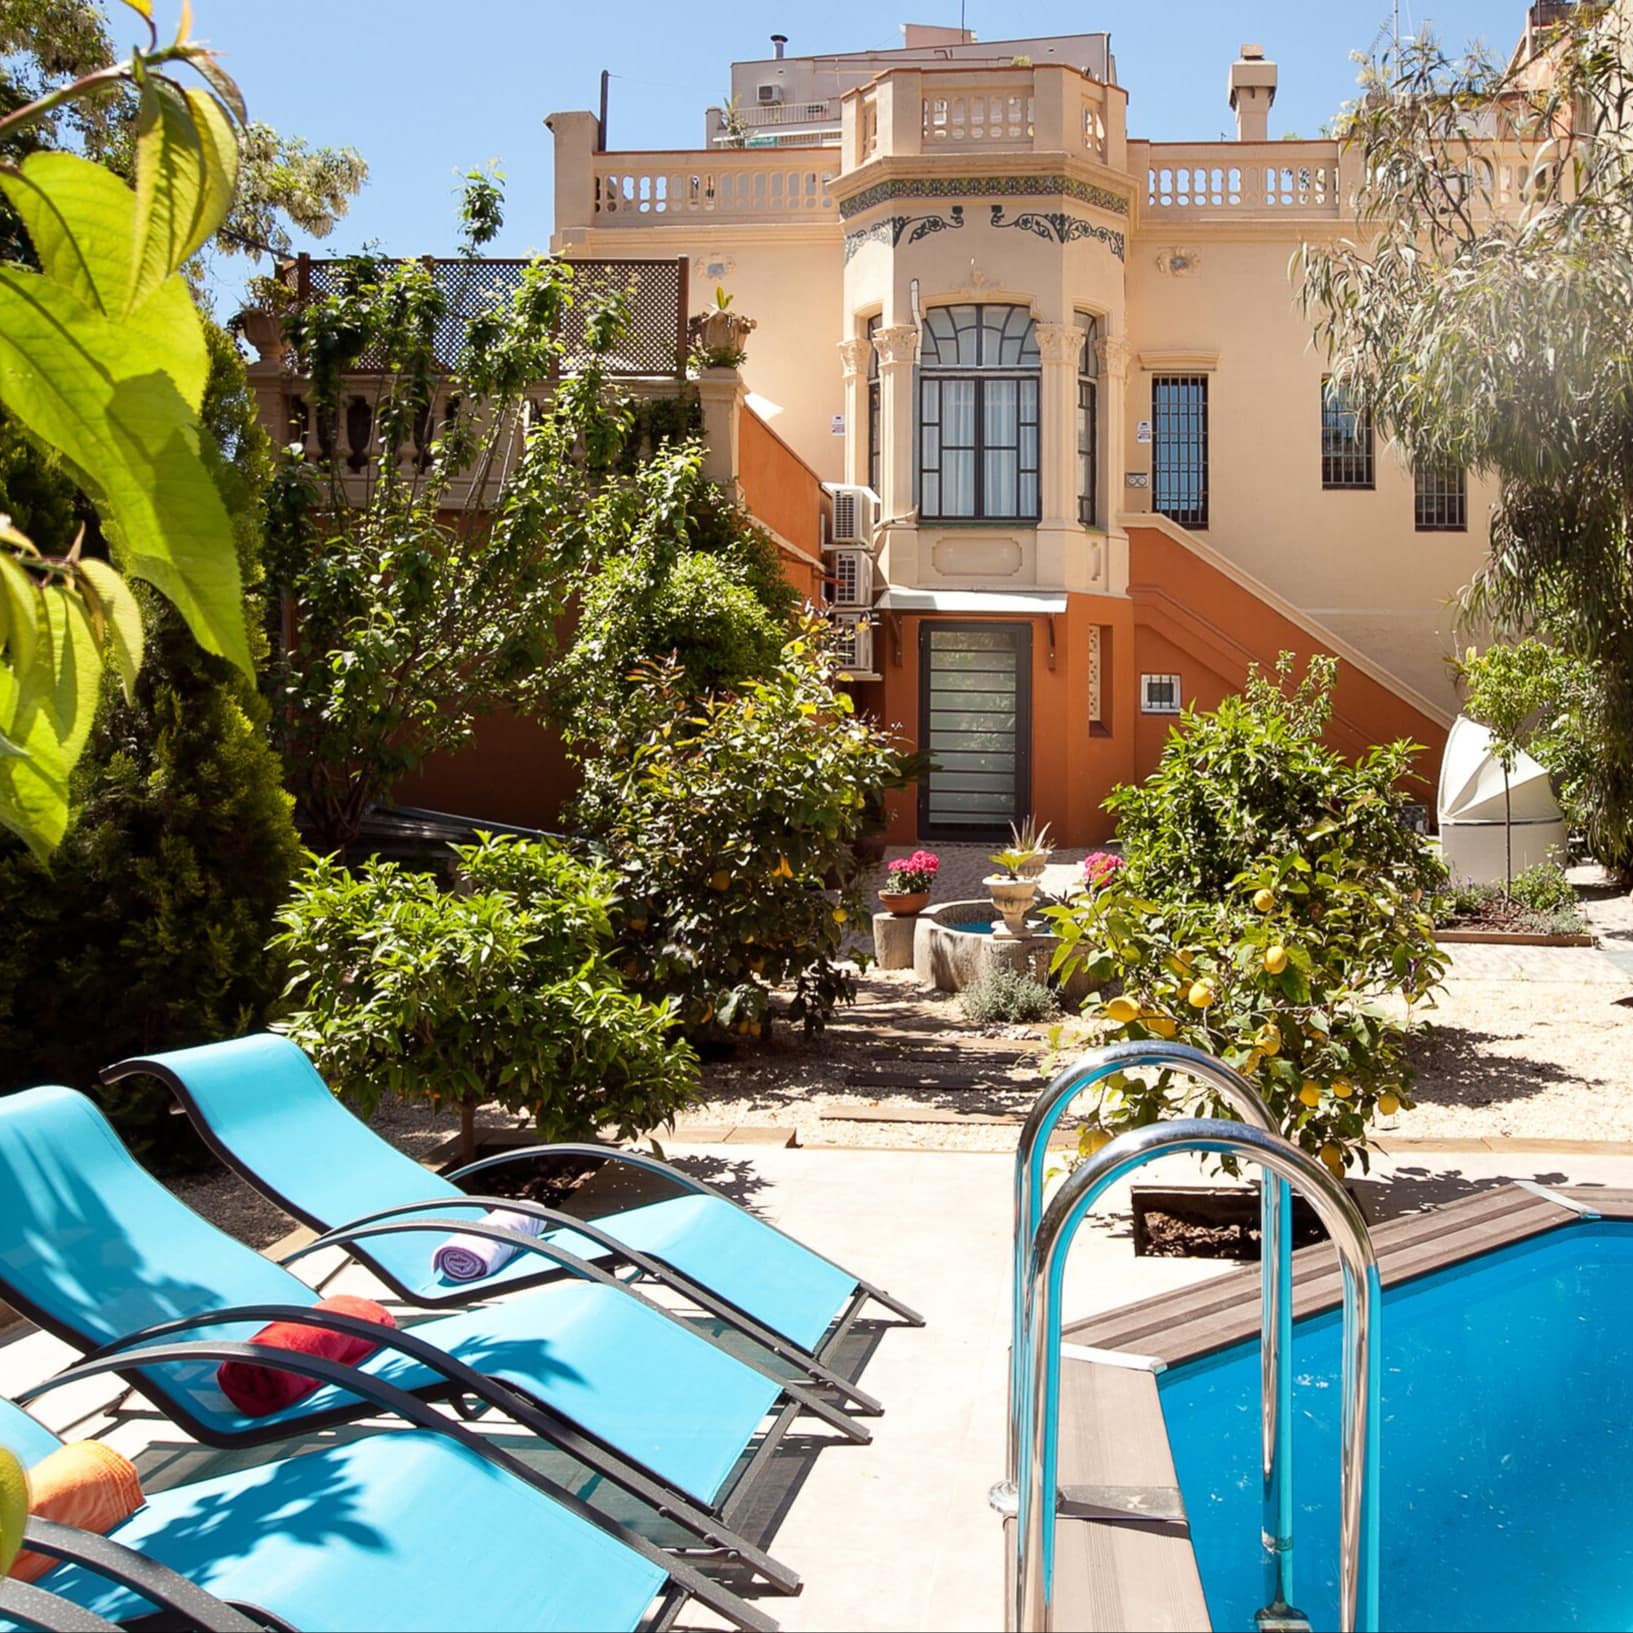 Villenähnliches Ferienhaus mit Pool in Barcelona, umgeben von Zitronen- und weiteren Bäumen